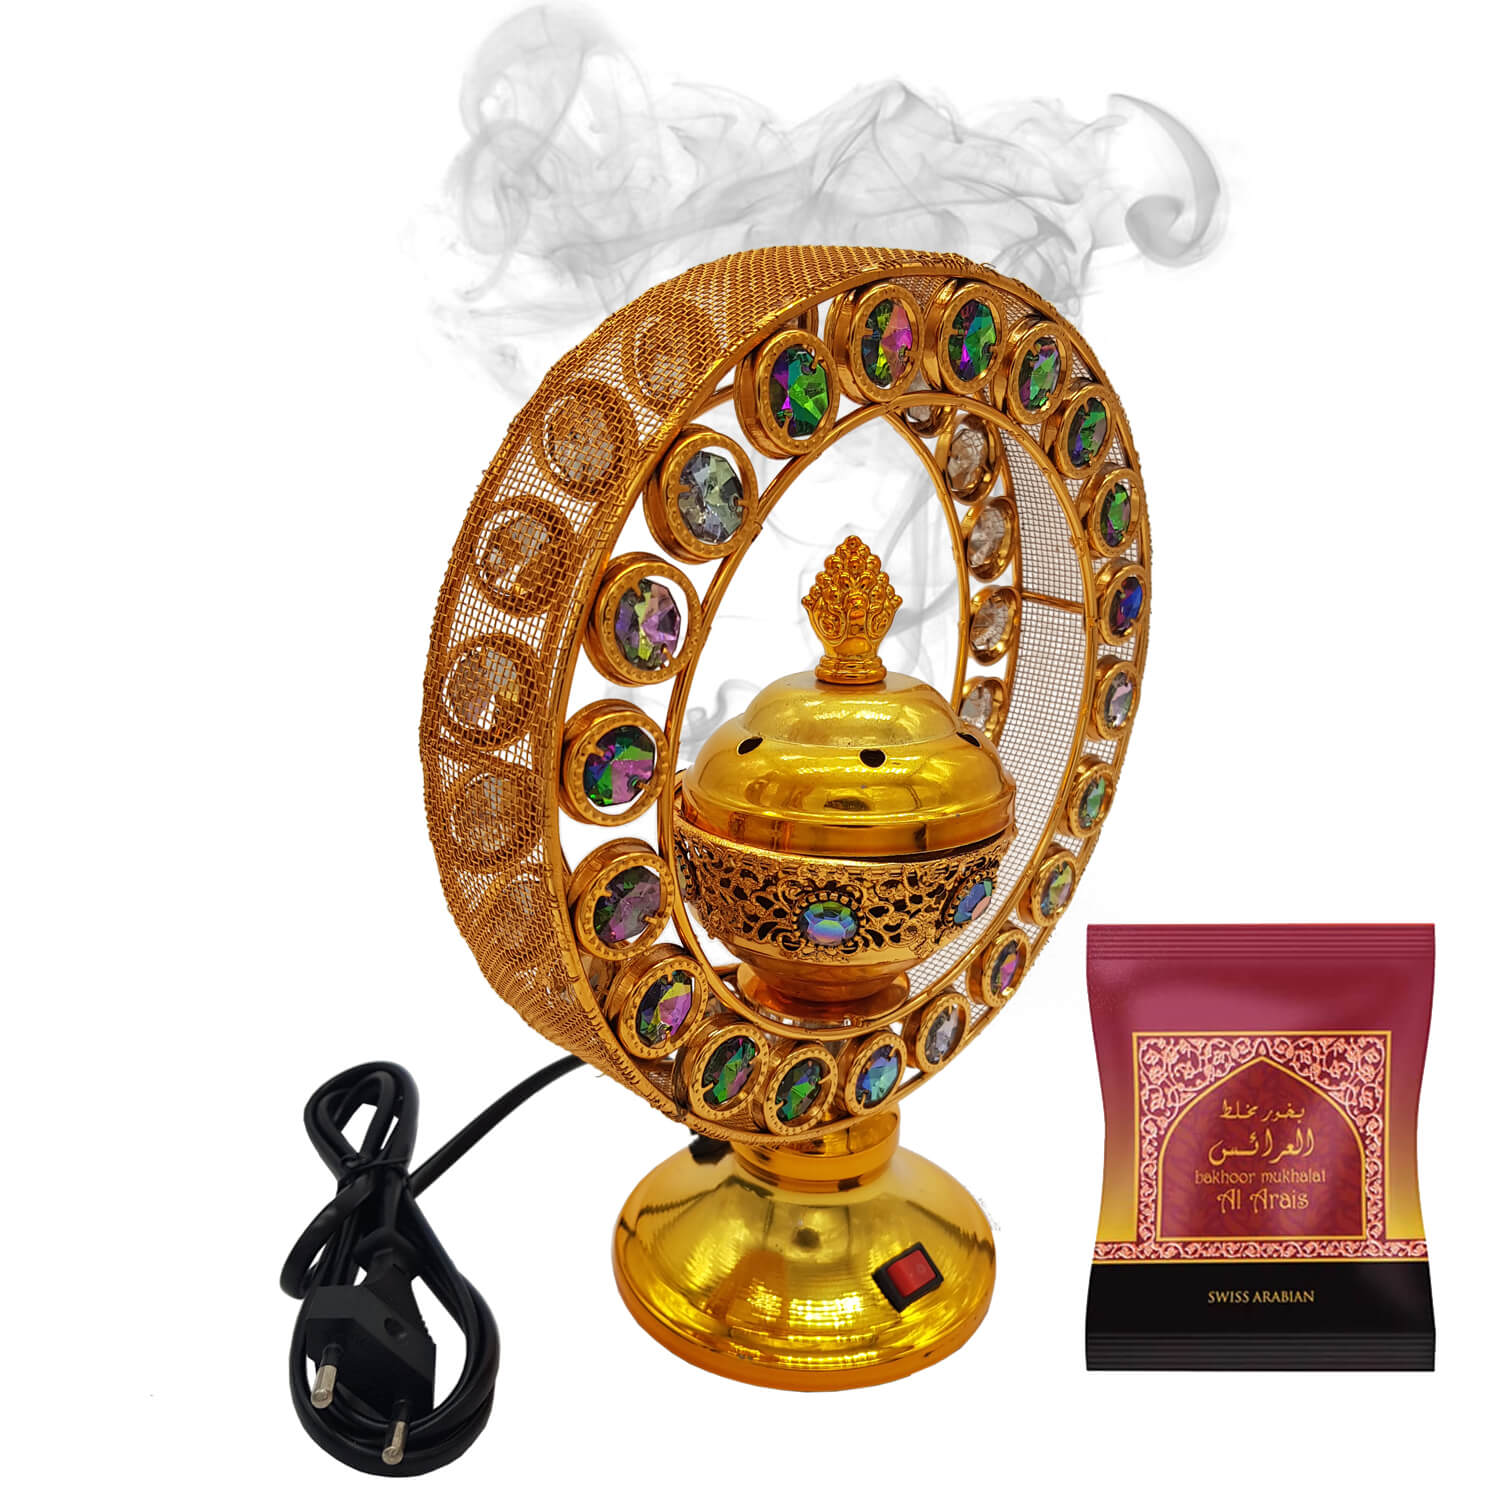 Exclusive Electrical Bakhoor Burner & 40g Fragrance Paste - Golden